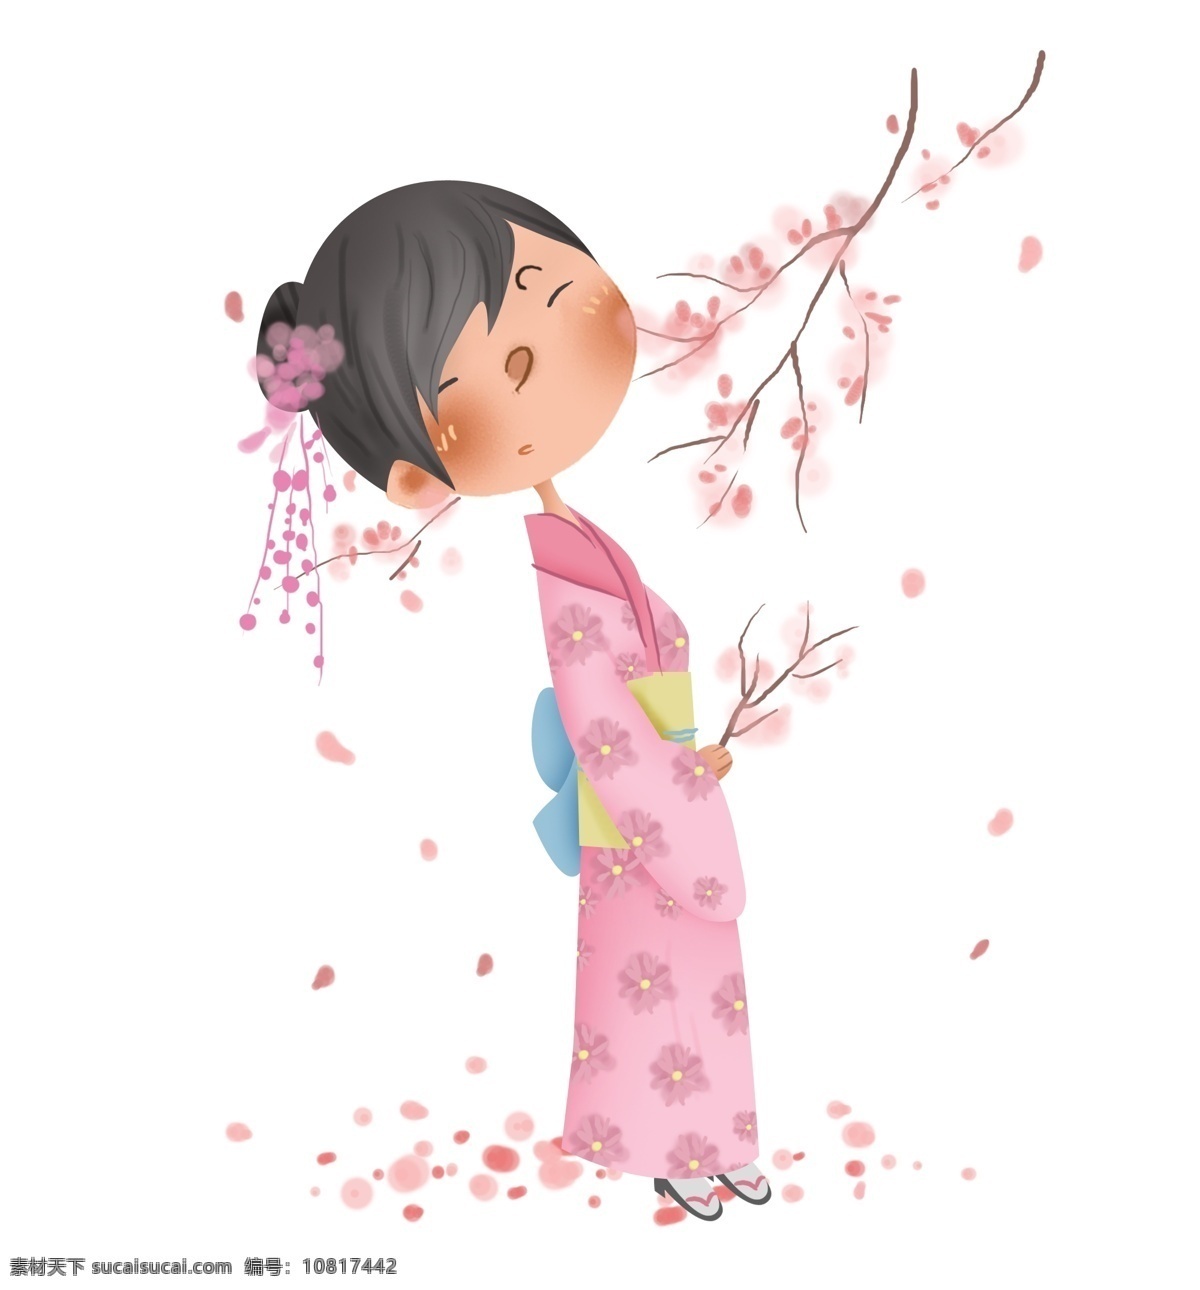 粉色 樱树 下 和服 女孩 日本 日本人 日本女孩 樱花 落樱 赏花 赏樱花 日本樱花 和风 日本少女 公园